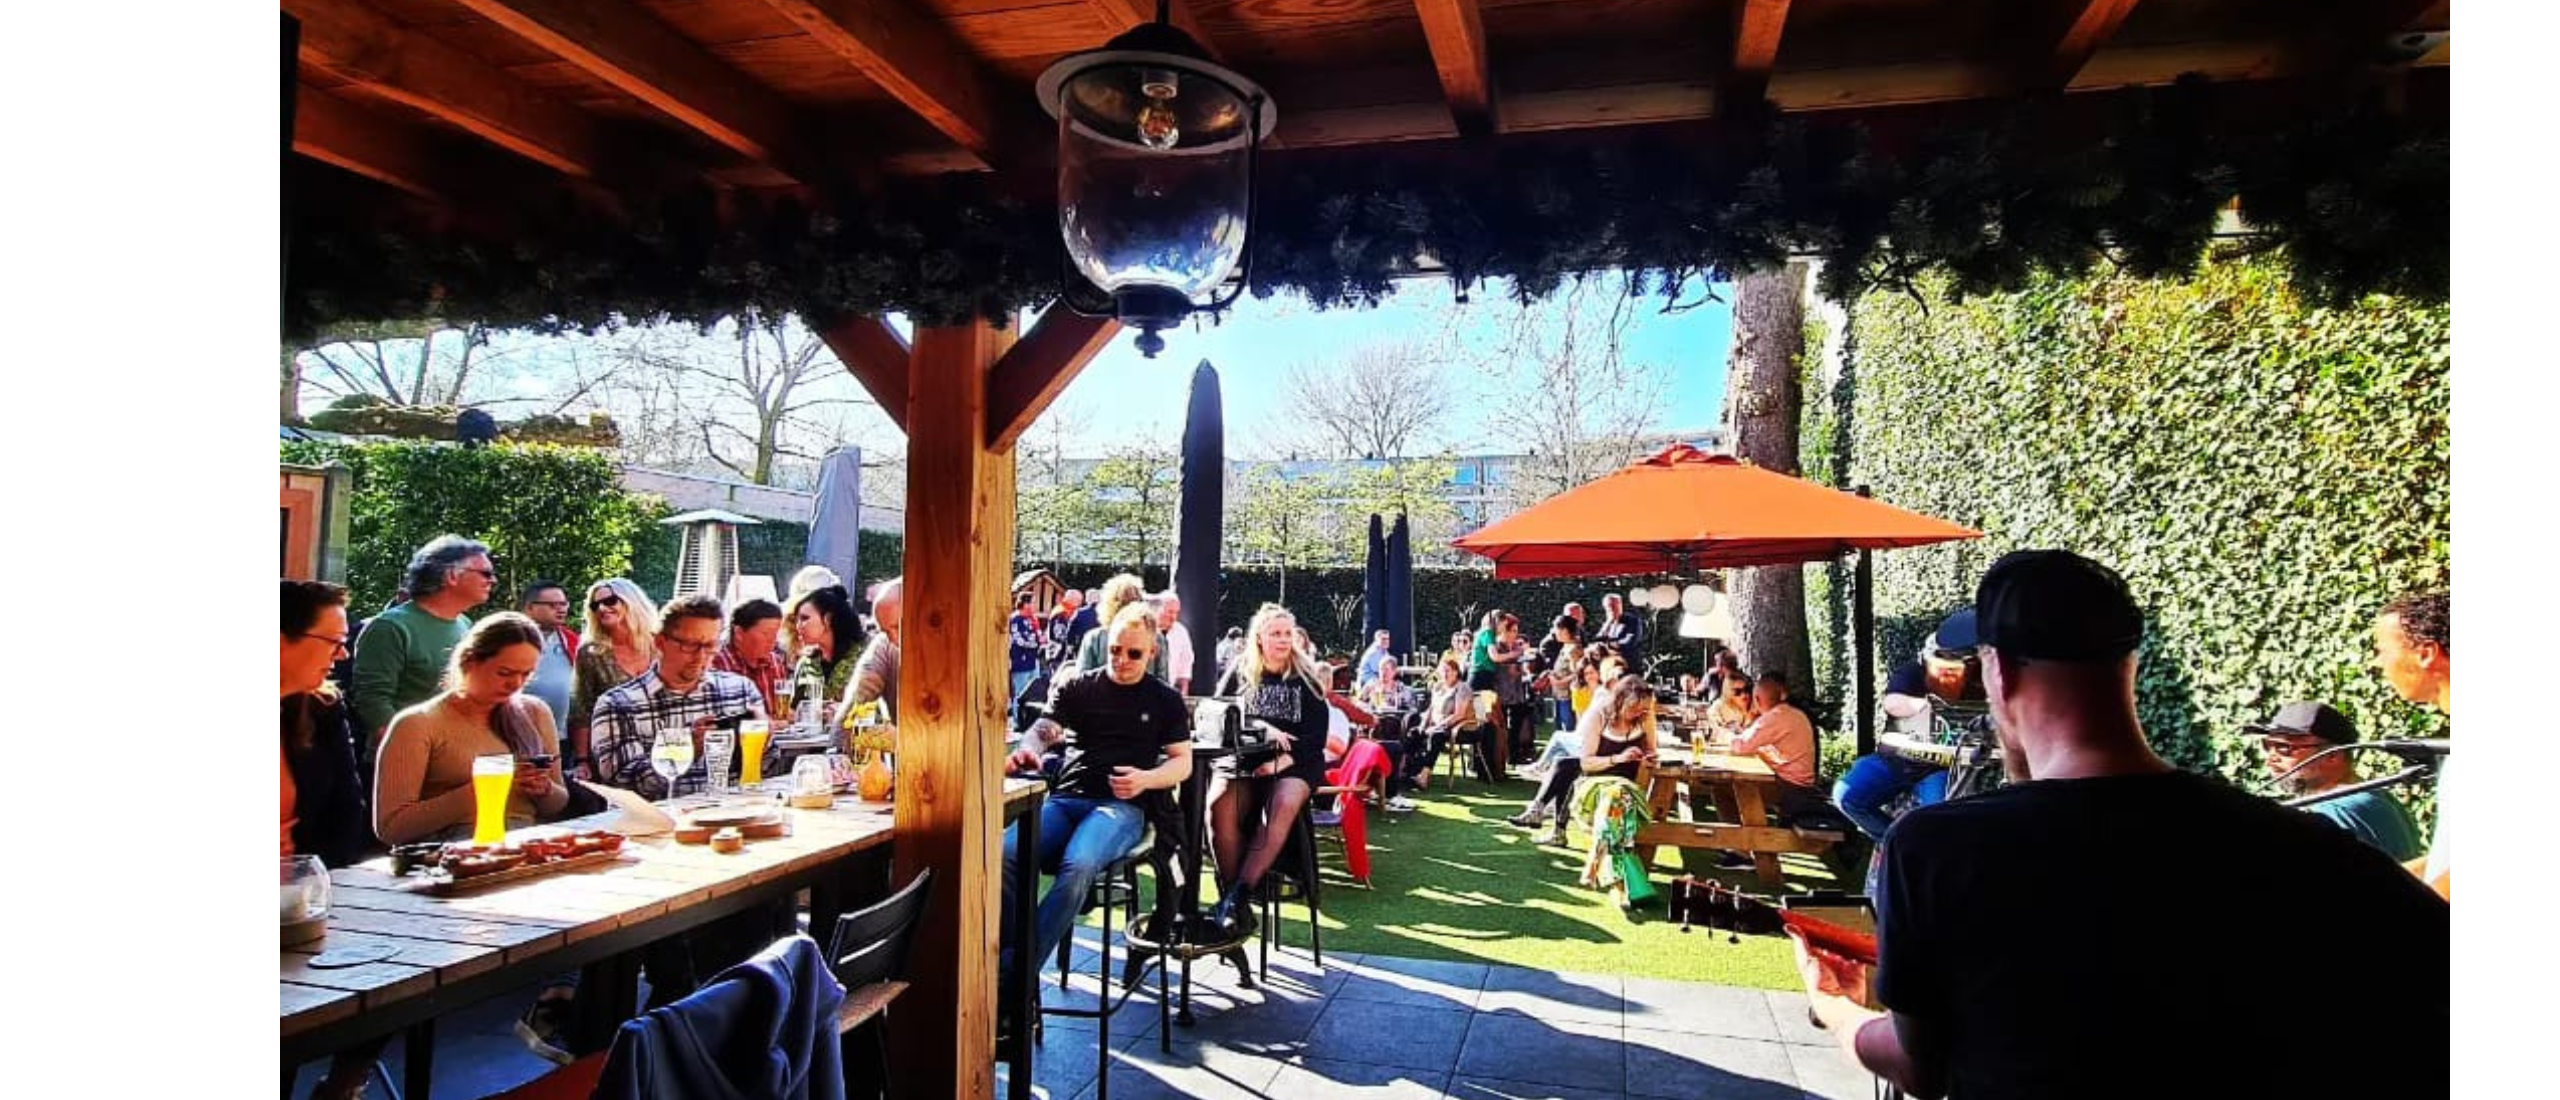 Café Lievense: Dé hotspot voor live muziek, groepsborrels en barbecues in Breda